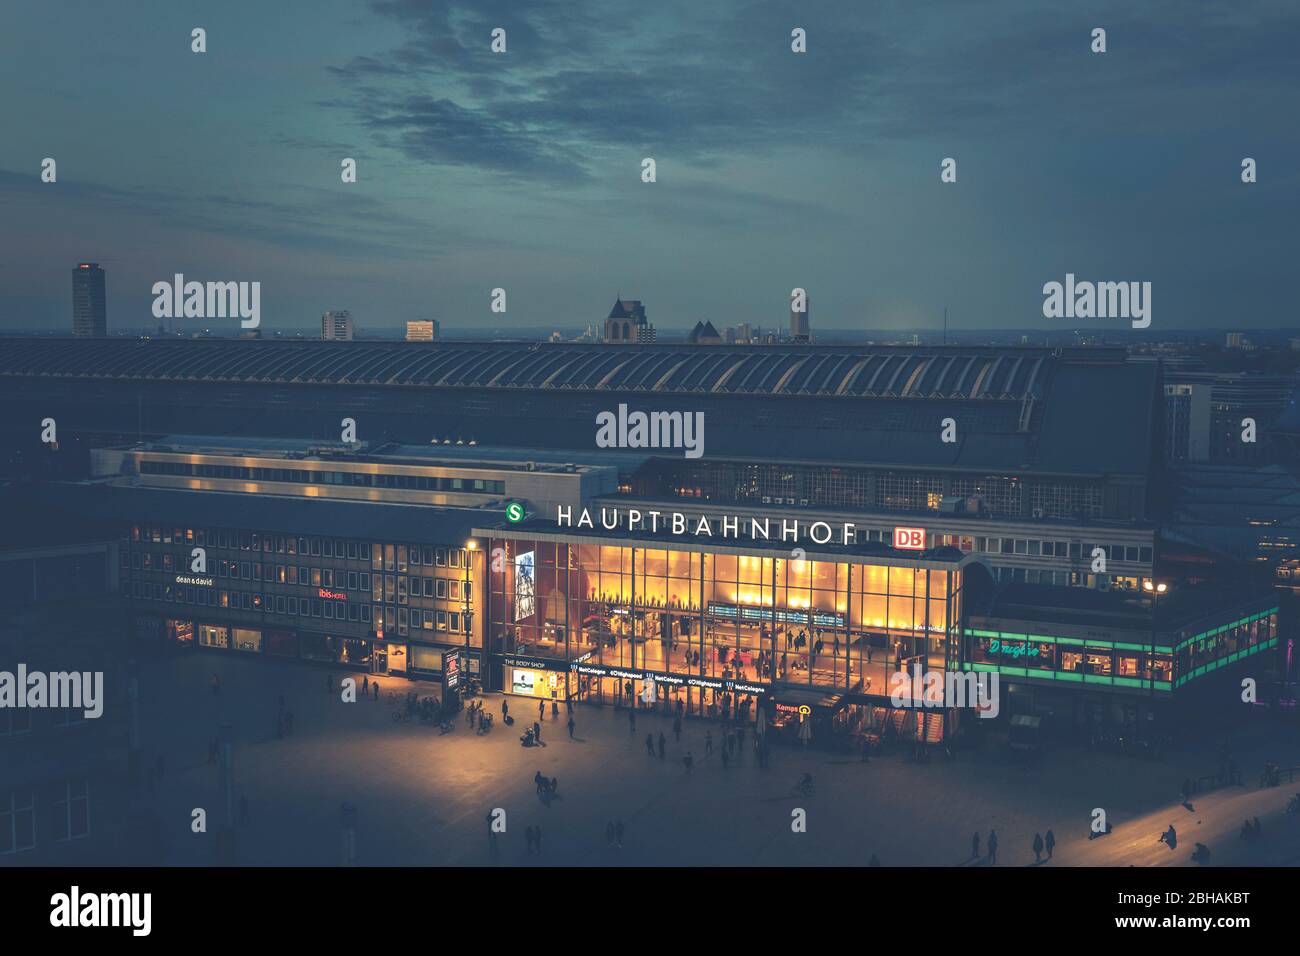 Ausblick über das beleuchtete Köln, dem Bahnhof und den Rhein, bei Nacht Stock Photo